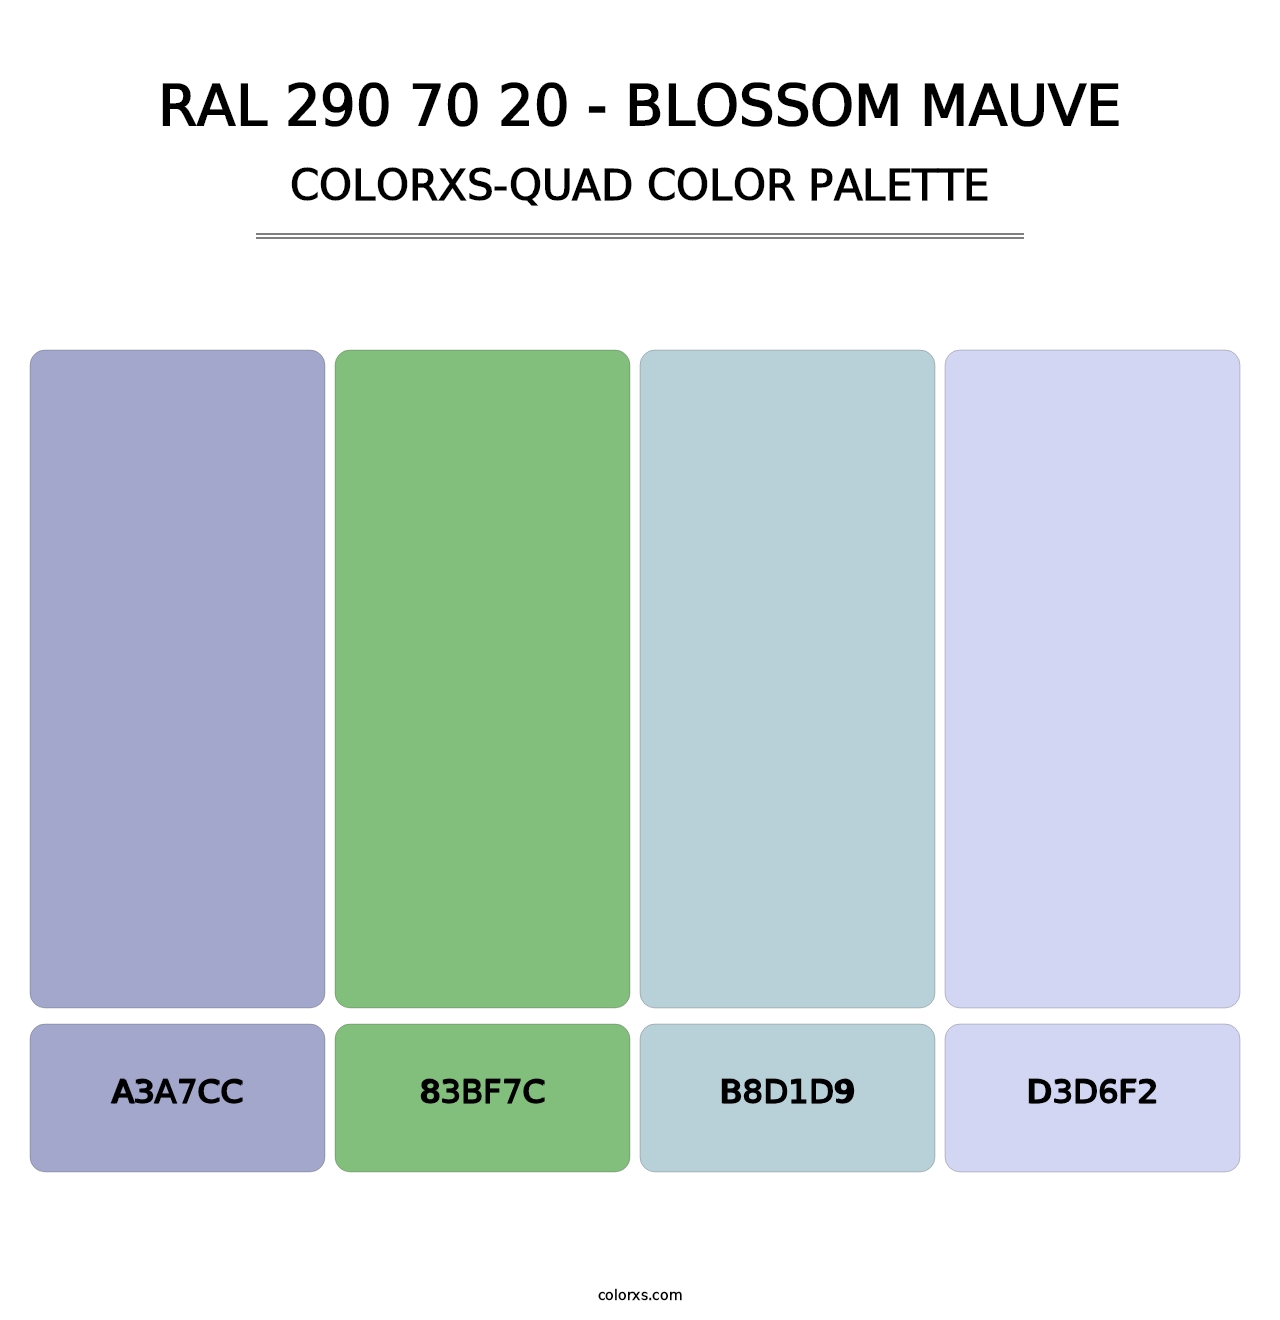 RAL 290 70 20 - Blossom Mauve - Colorxs Quad Palette